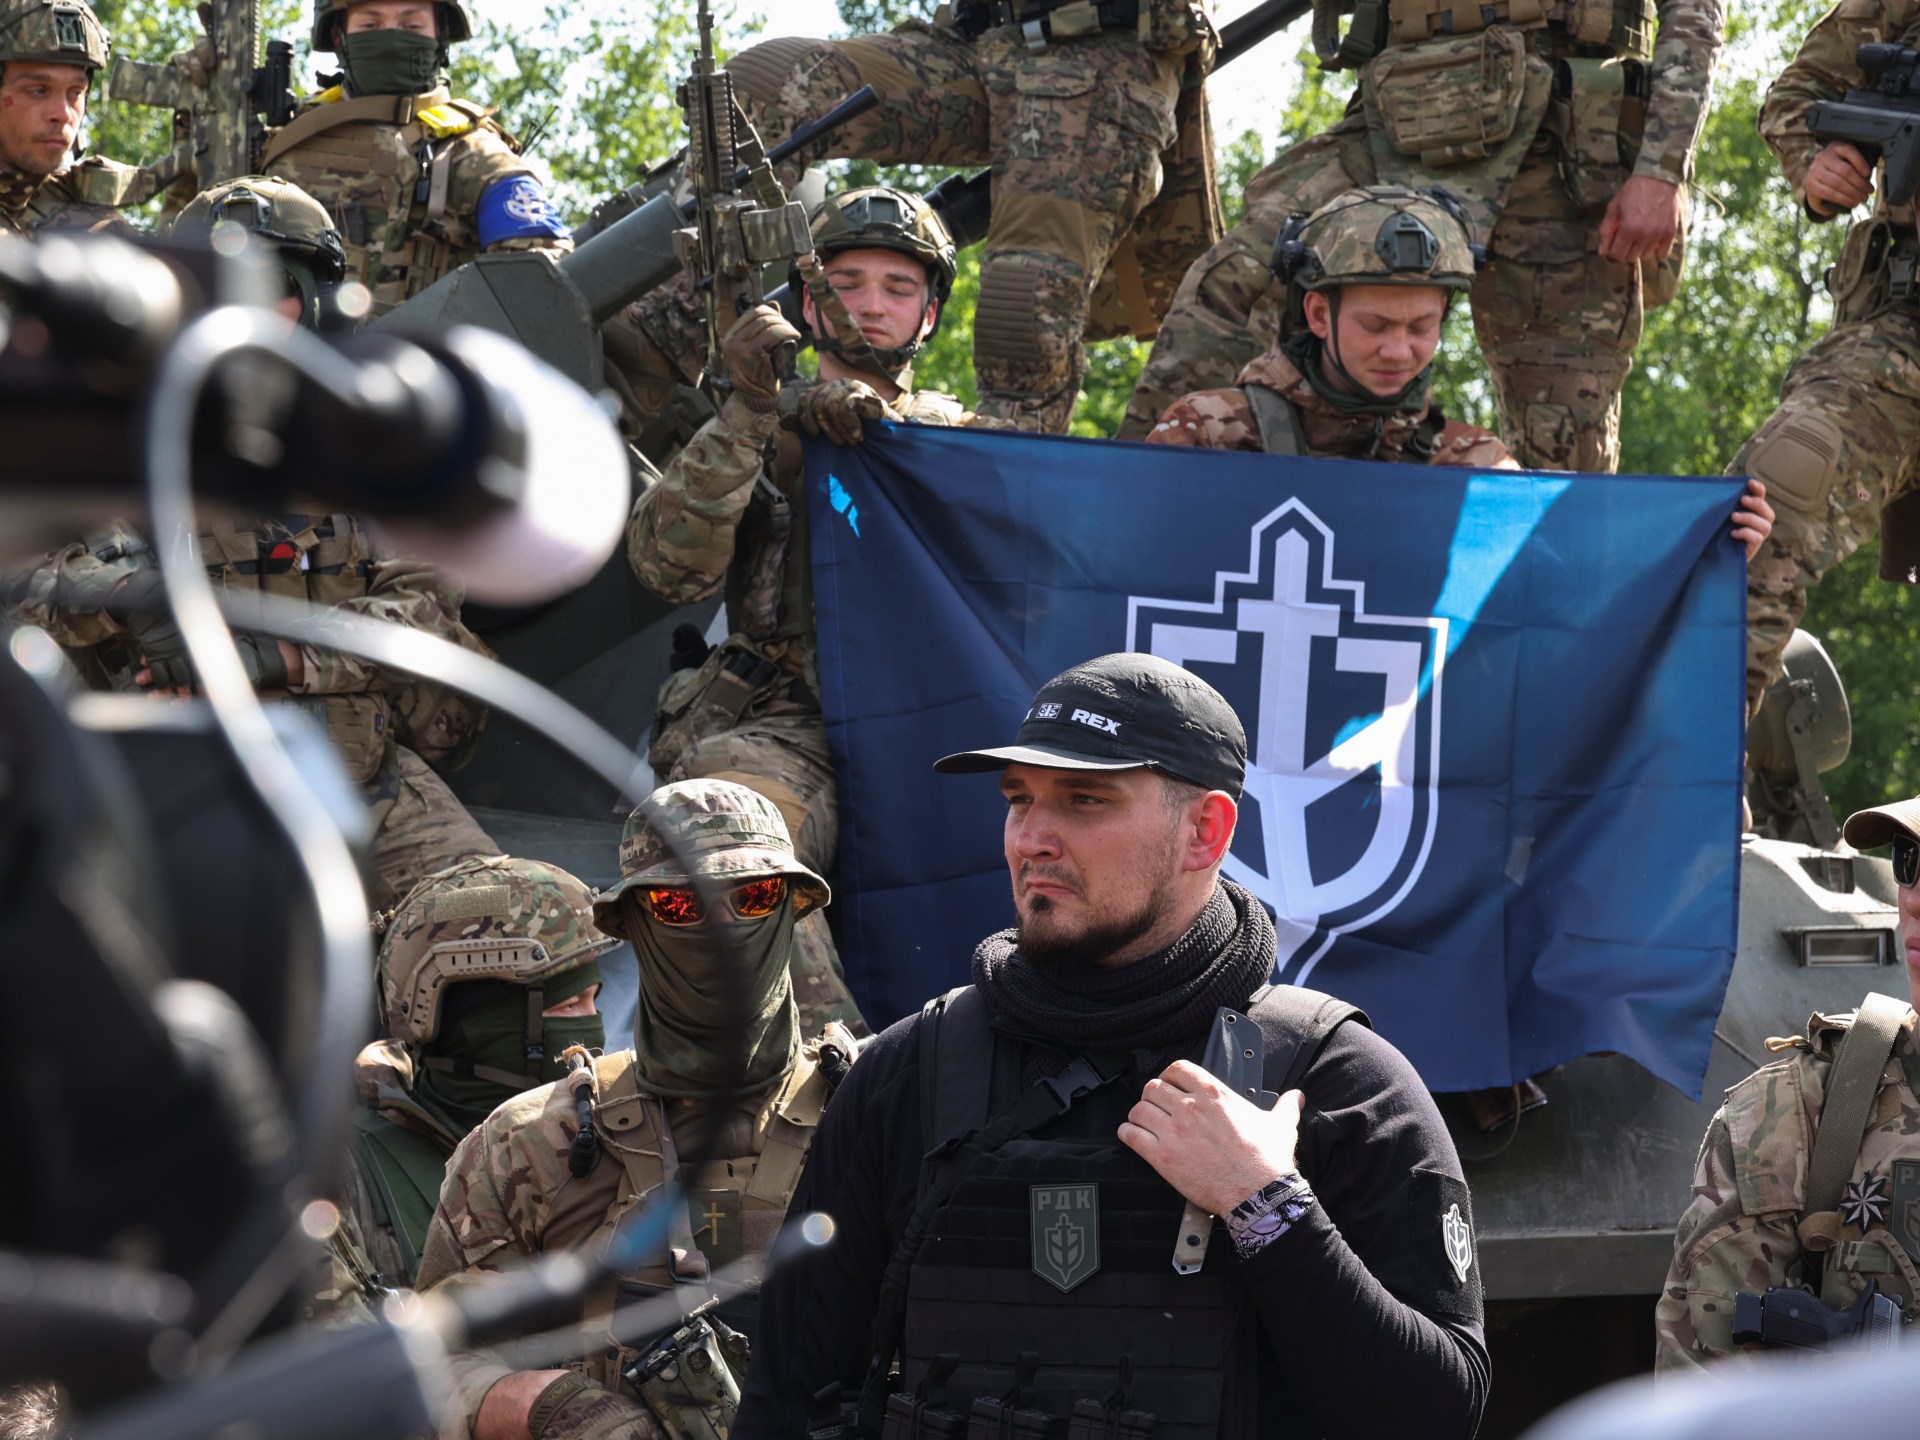 des combattants pro-ukrainiens attaquent le sud de la Russie ;  Offre d’échange de prisonniers de guerre |  Nouvelles de la guerre entre la Russie et l’Ukraine